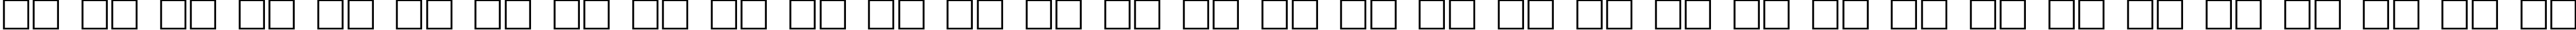 Пример написания русского алфавита шрифтом HamLake Regular